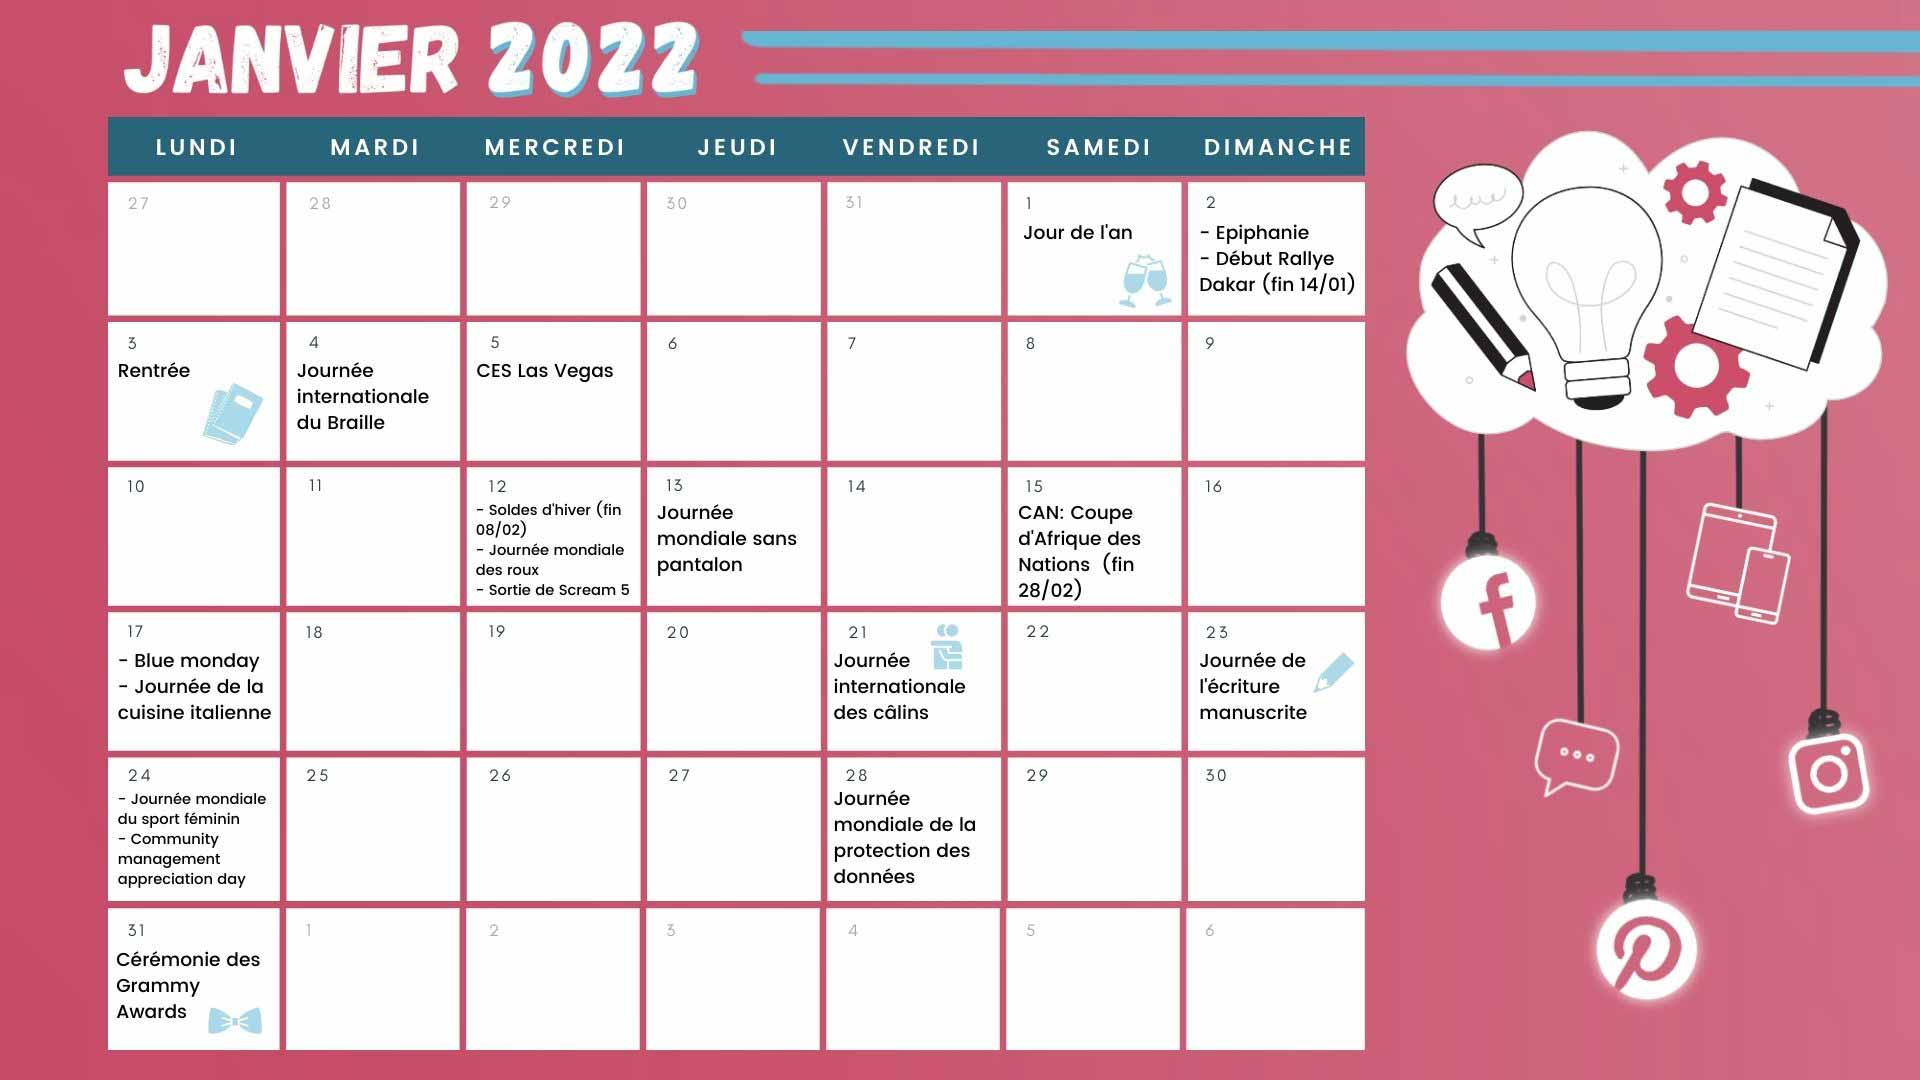 Découvrez tous les événements du mois de février grâce à votre calendrier marronnier janvier 2022 !